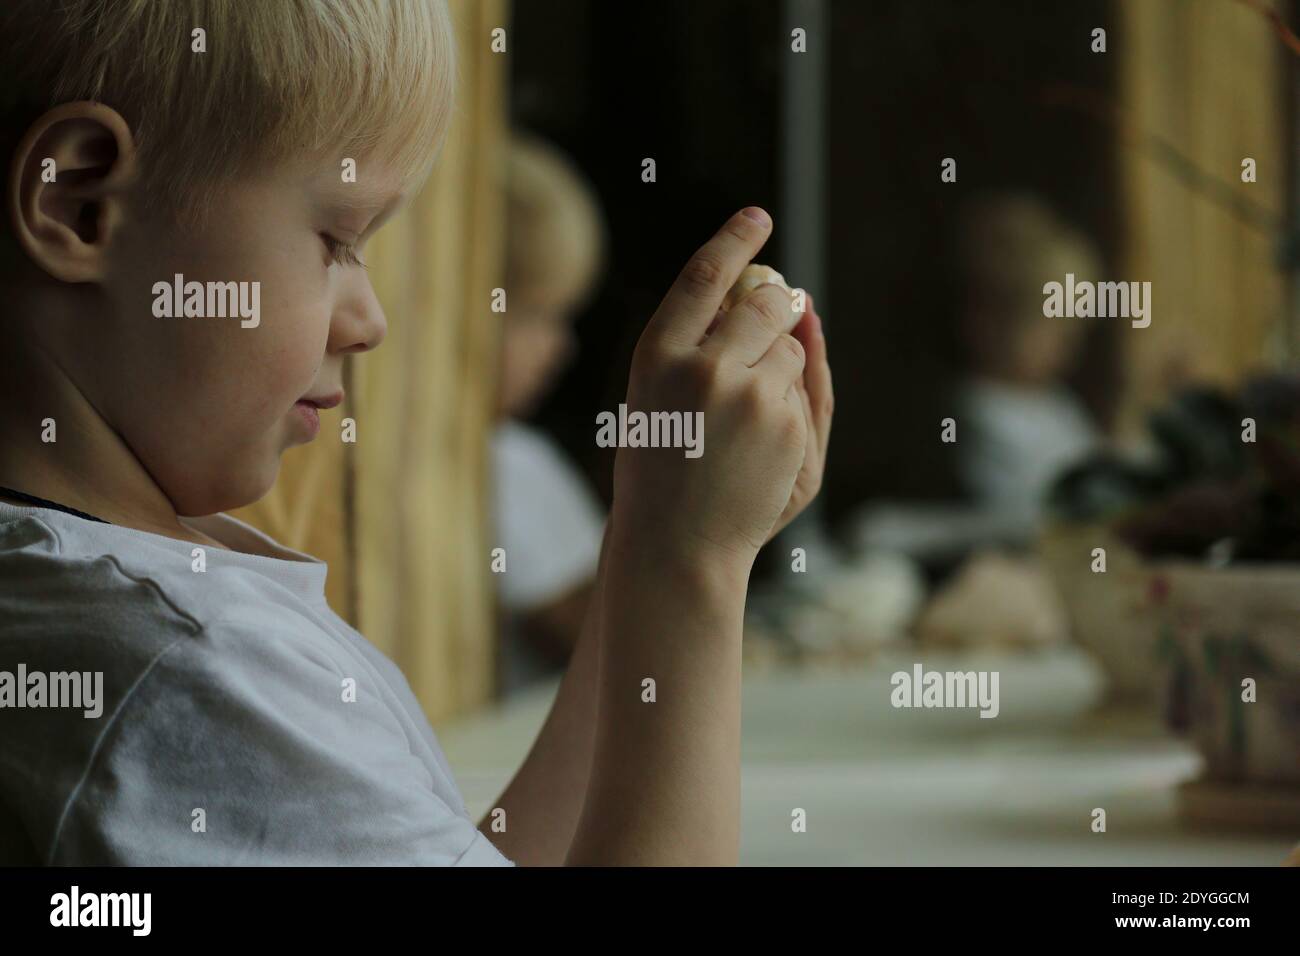 Un petit garçon aux cheveux blonds dans un T-shirt blanc se tient en profil par une fenêtre intérieure, reflétée dans les miroirs, et tient des coquillages dans ses mains Banque D'Images